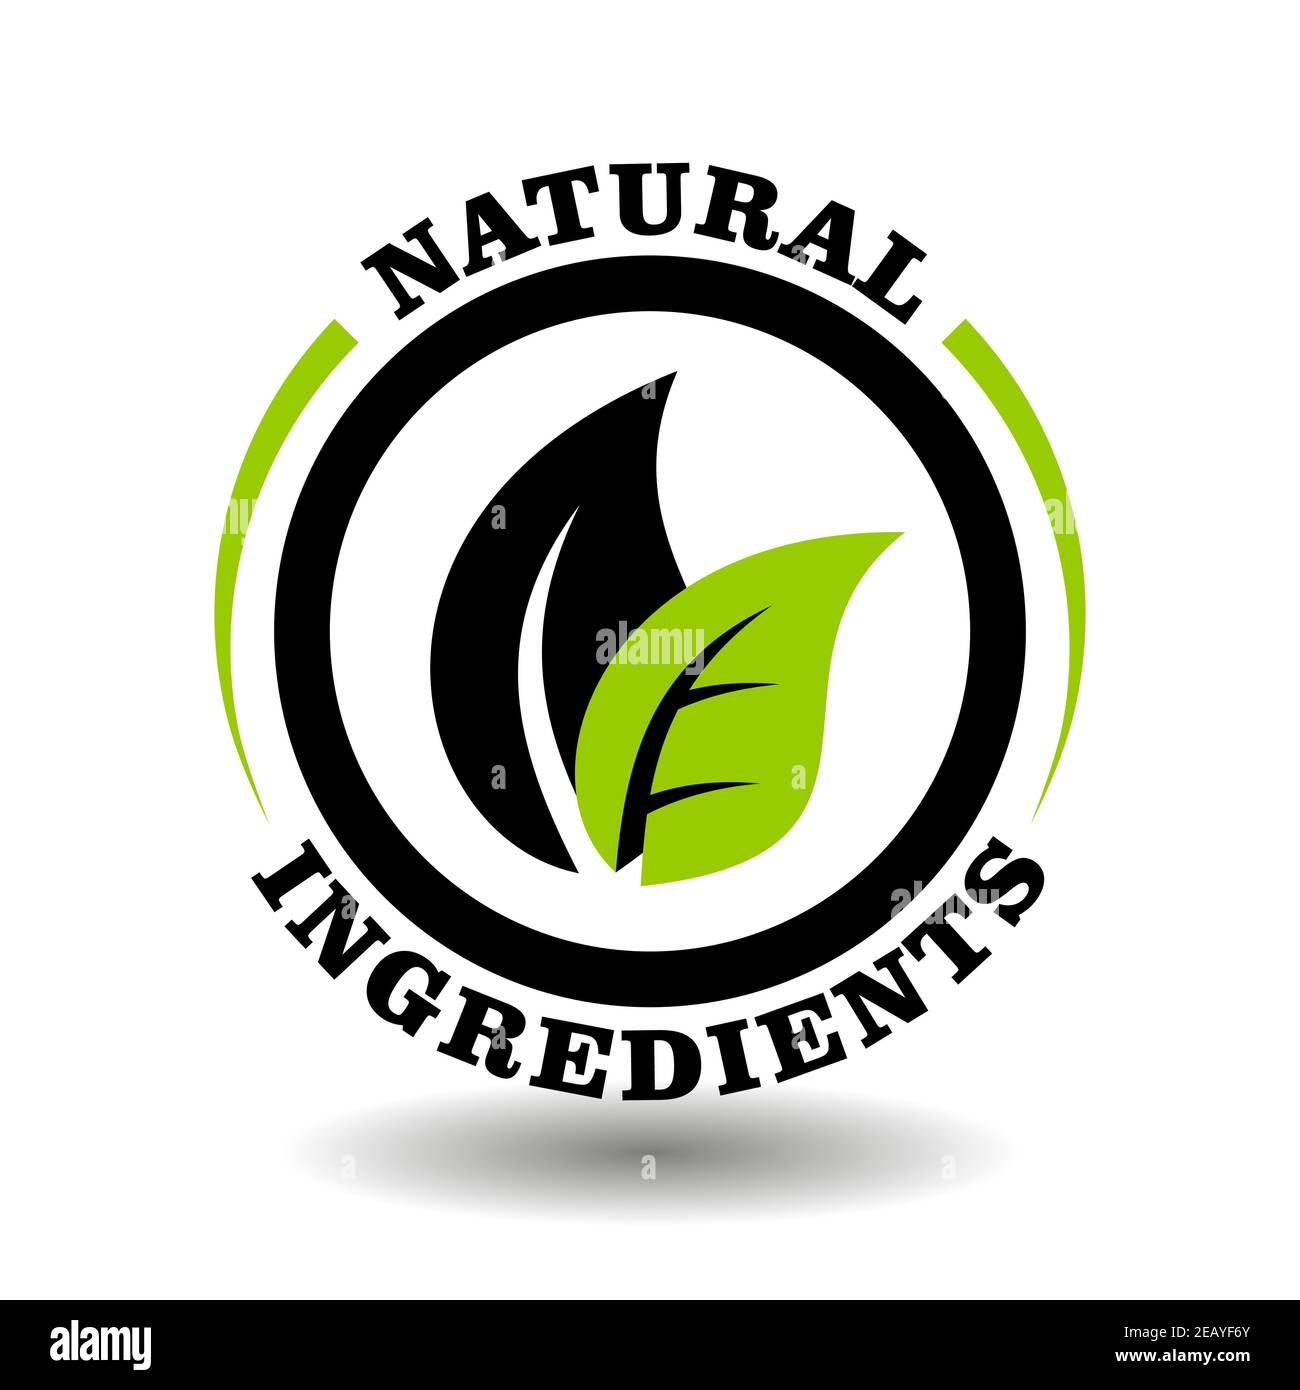 Timbre vectoriel d'ingrédients écologiques naturels avec illustration de feuilles vertes. Logo rond pour la certification de l'enseigne d'emballage bio-cosmétique biologique Illustration de Vecteur